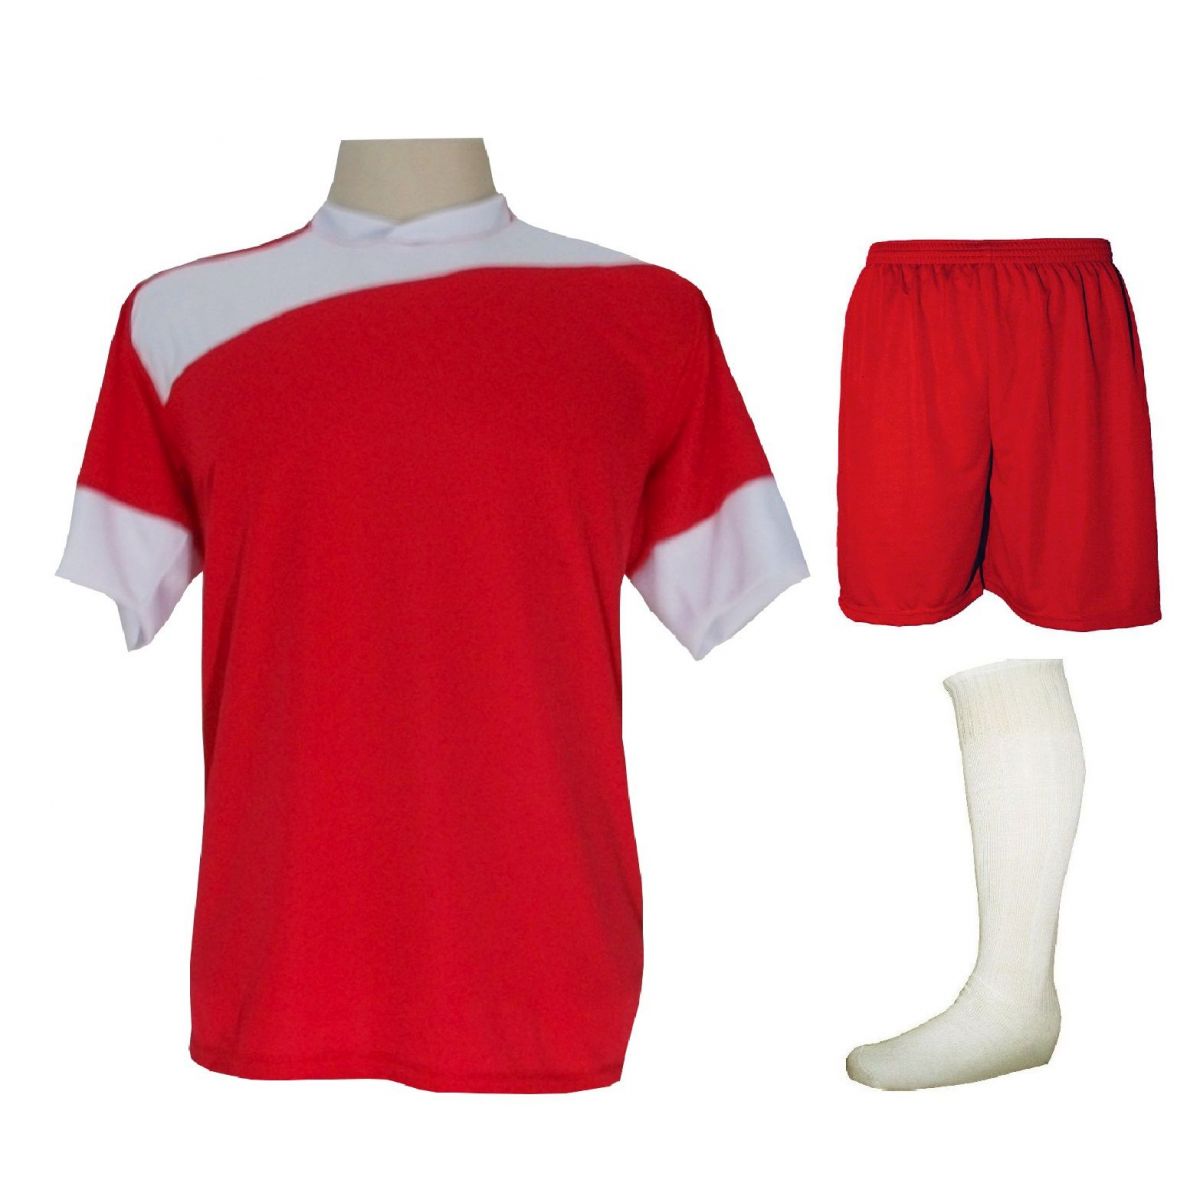 Uniforme Esportivo Completo modelo Sporting 14+1 (14 camisas Vermelho/Branco + 14 calções Madrid Vermelho + 14 pares de meiões Branco + 1 conjunto de goleiro) + Brindes